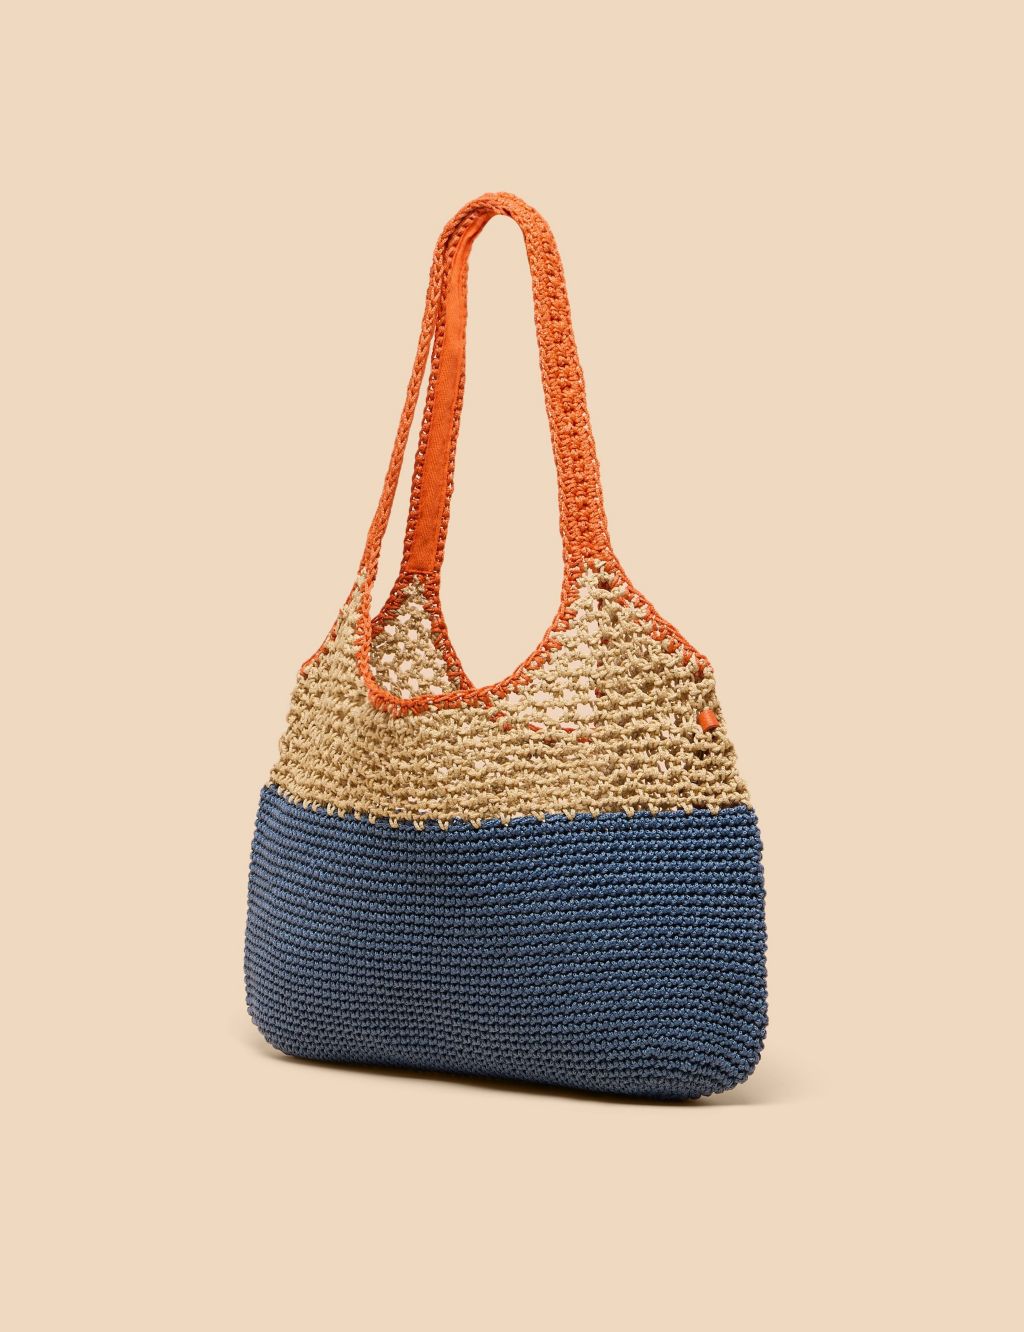 Crochet Tote Bag 1 of 3